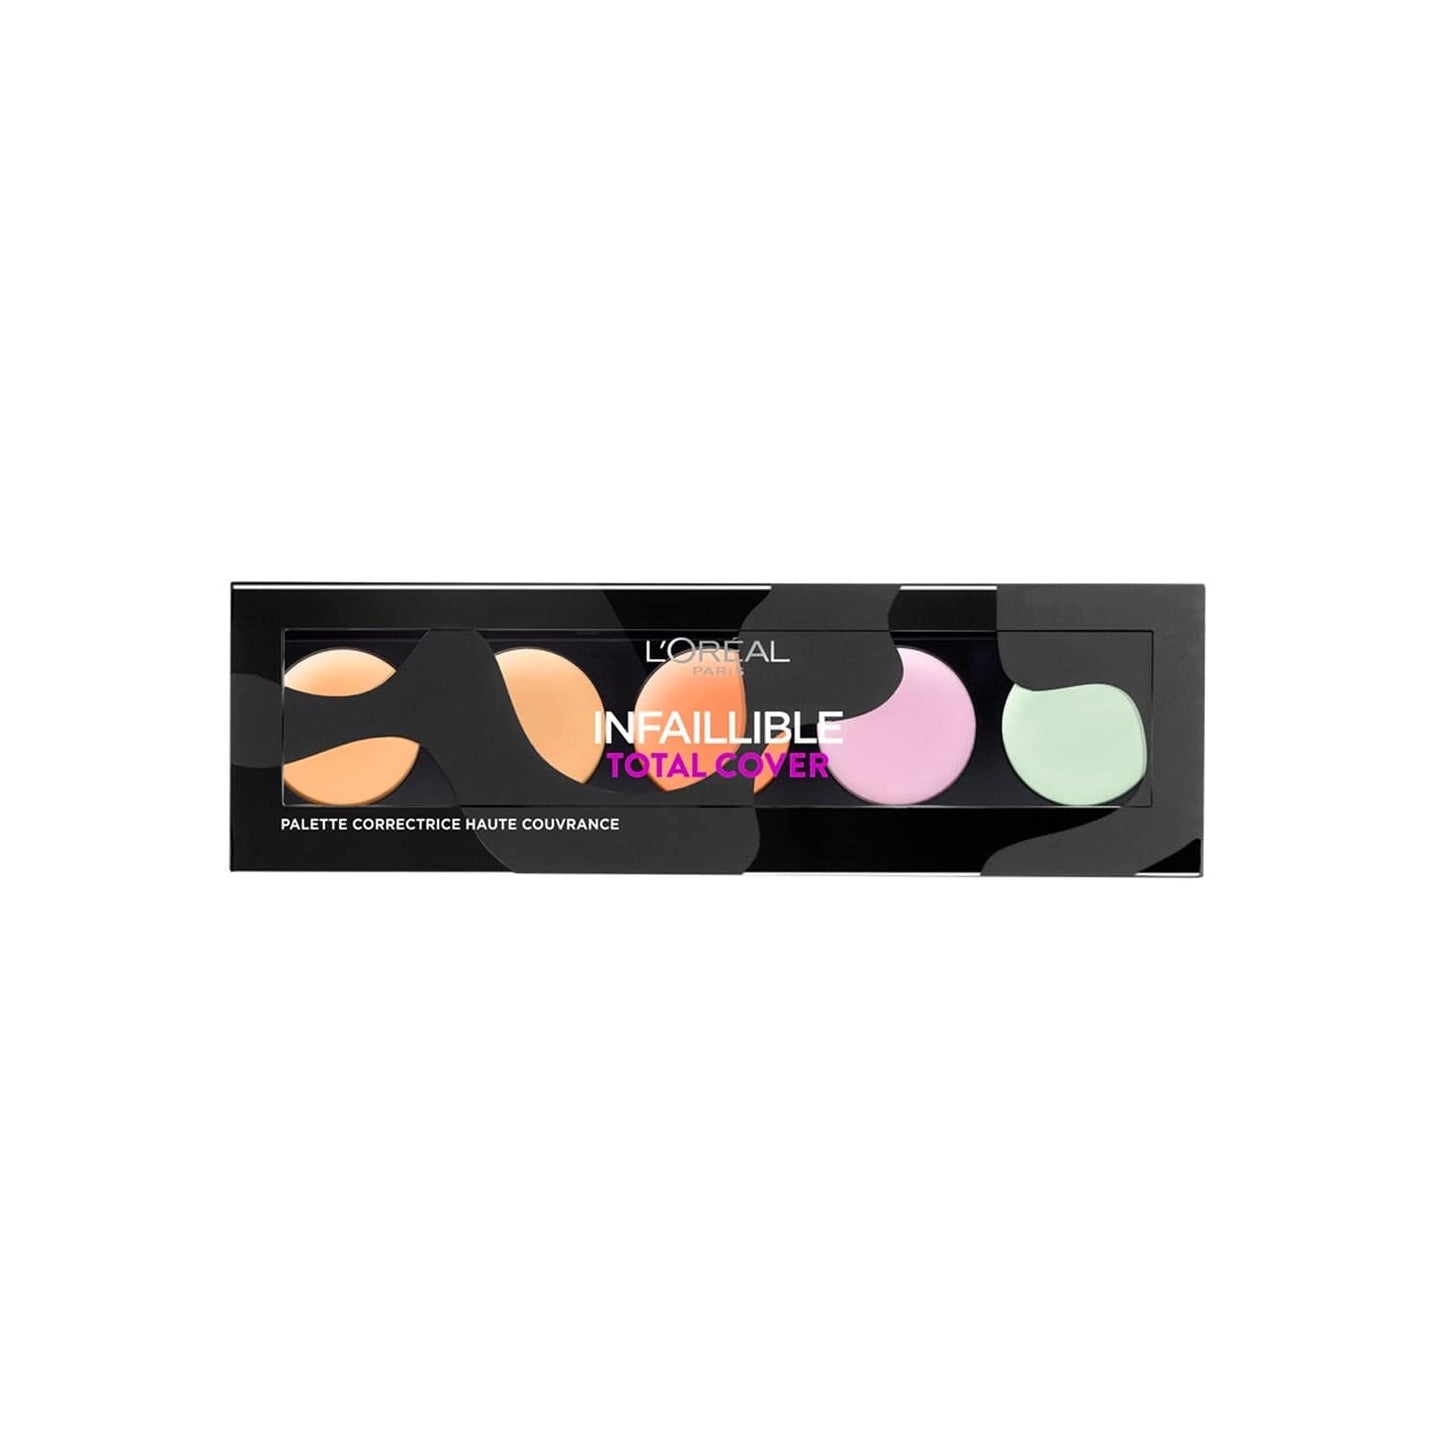 L'Oréal - Infallible - "Total cover" concealer palette - 10g - L'Oréal - Ethni Beauty Market